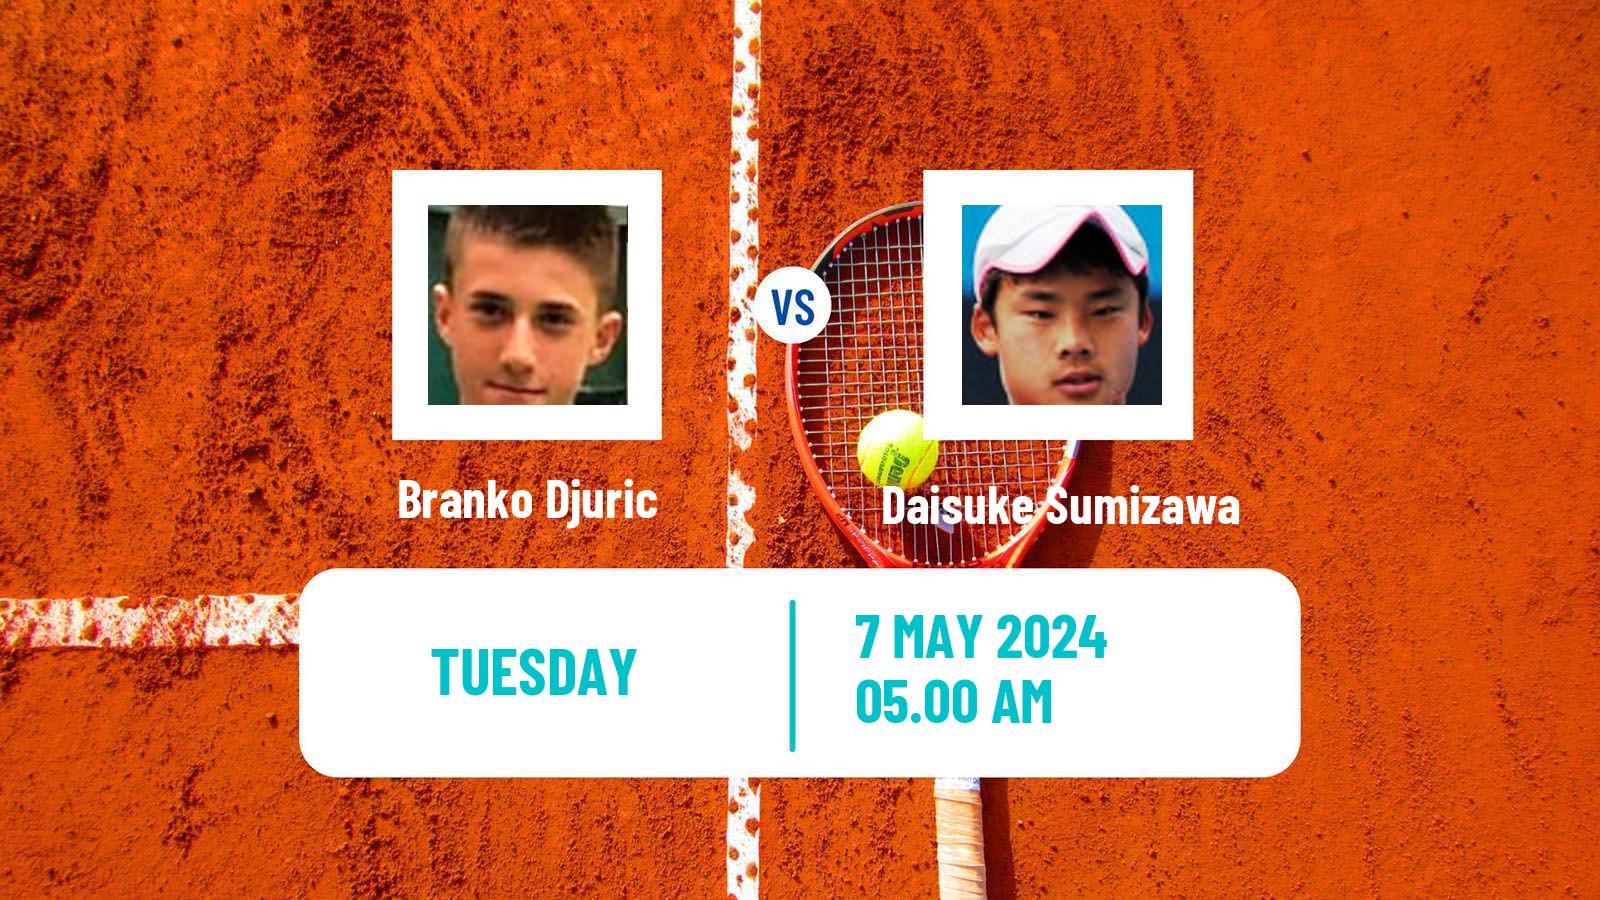 Tennis ITF M25 Kursumlijska Banja Men Branko Djuric - Daisuke Sumizawa